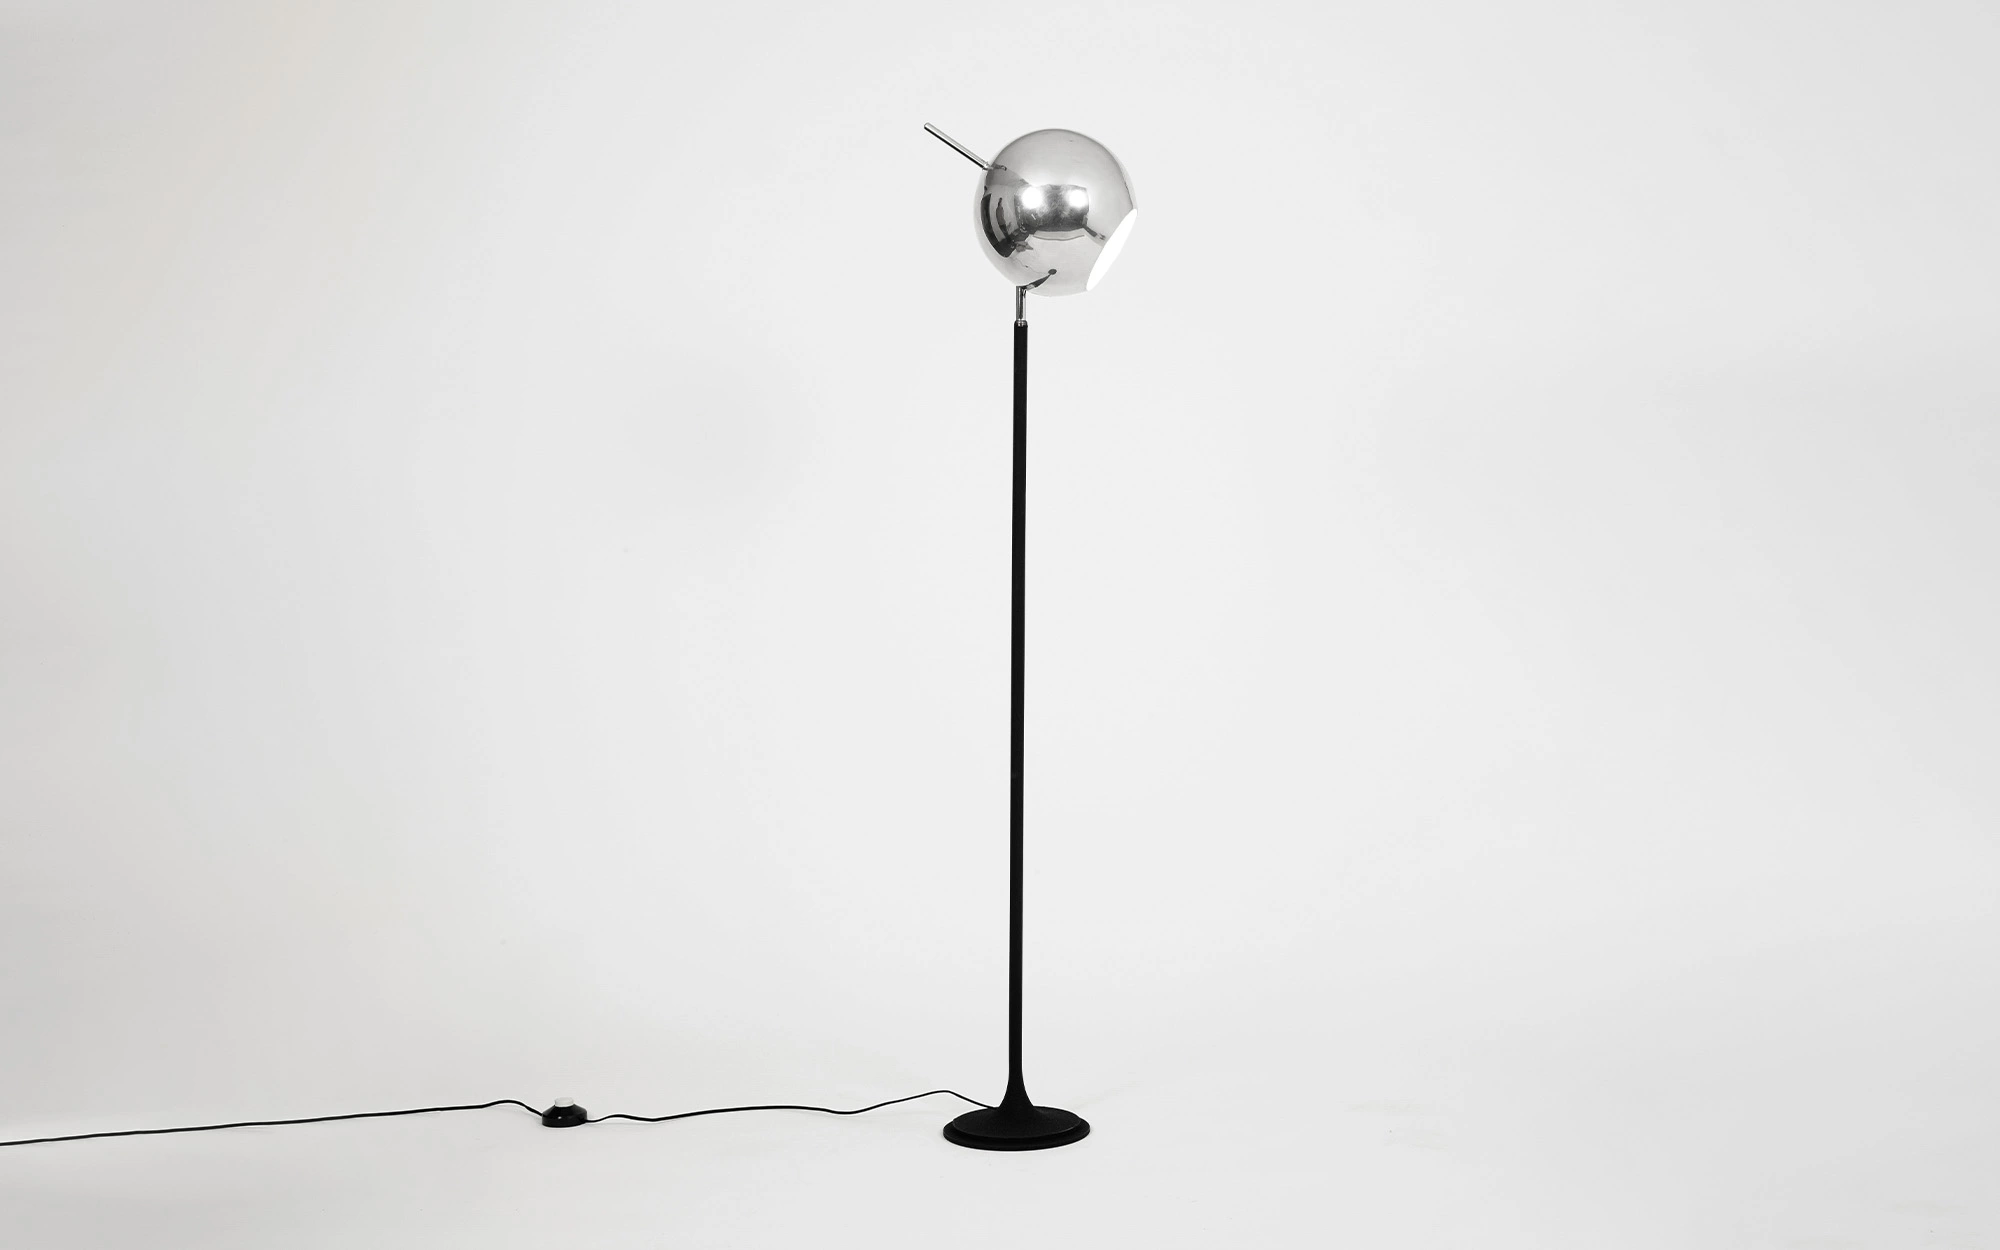 1082 - Gino Sarfatti - Table light - Galerie kreo